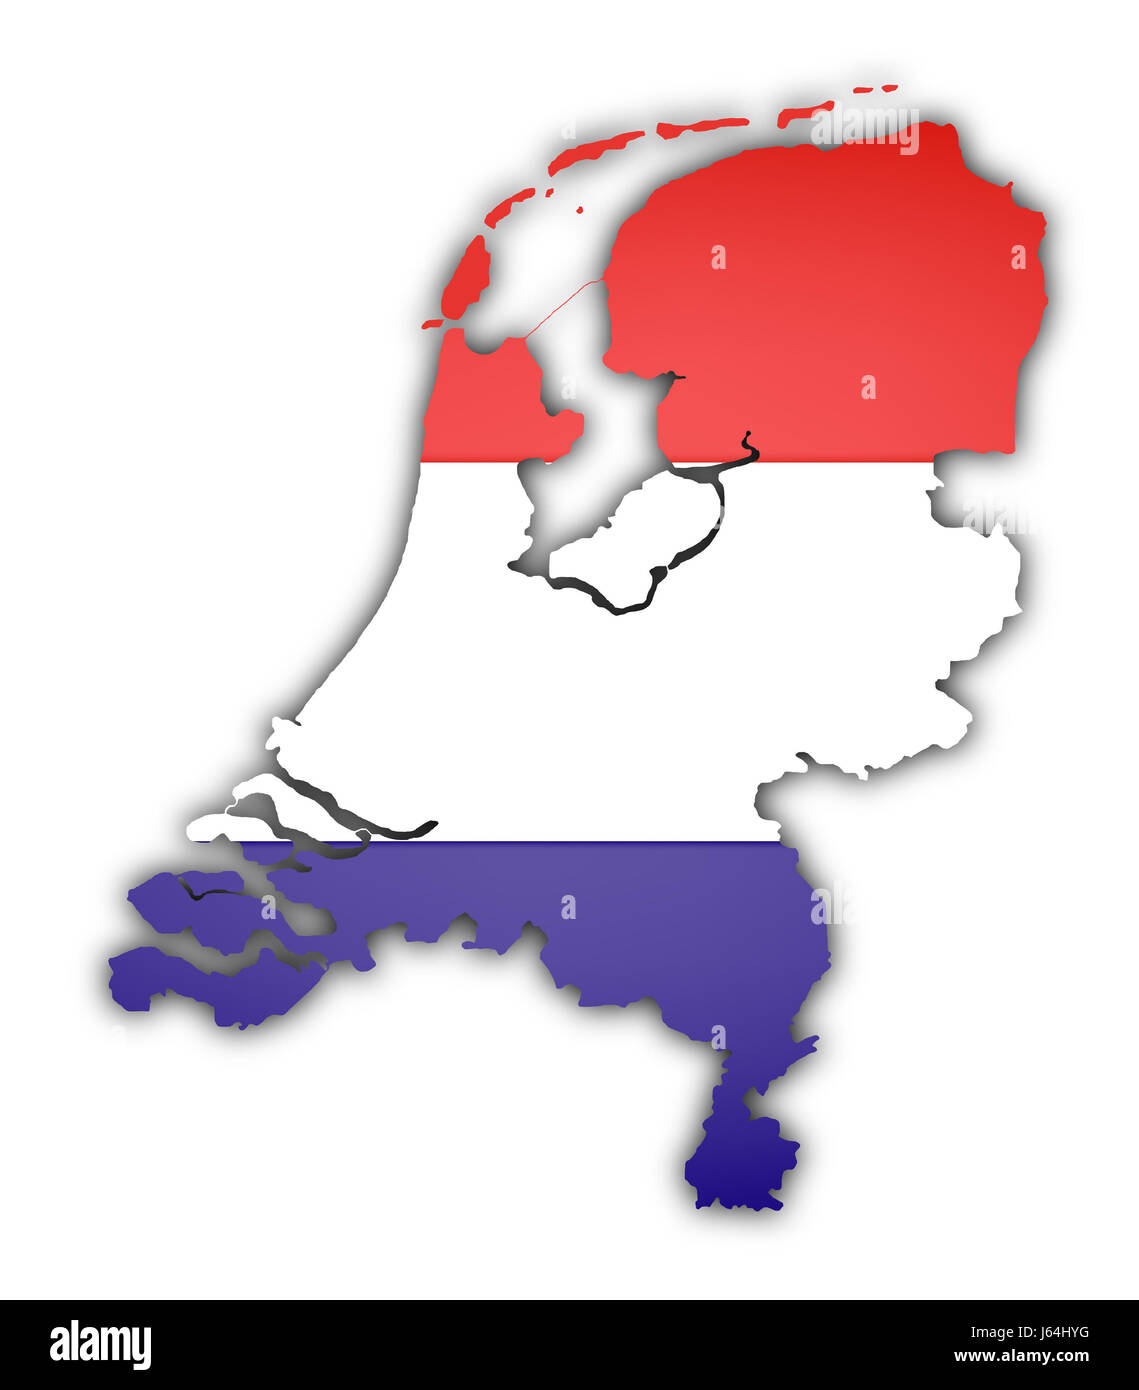 Européenne europe vierge caucasienne drapeau Pays-Bas Amsterdam carte du  pays de l'Union européenne Photo Stock - Alamy